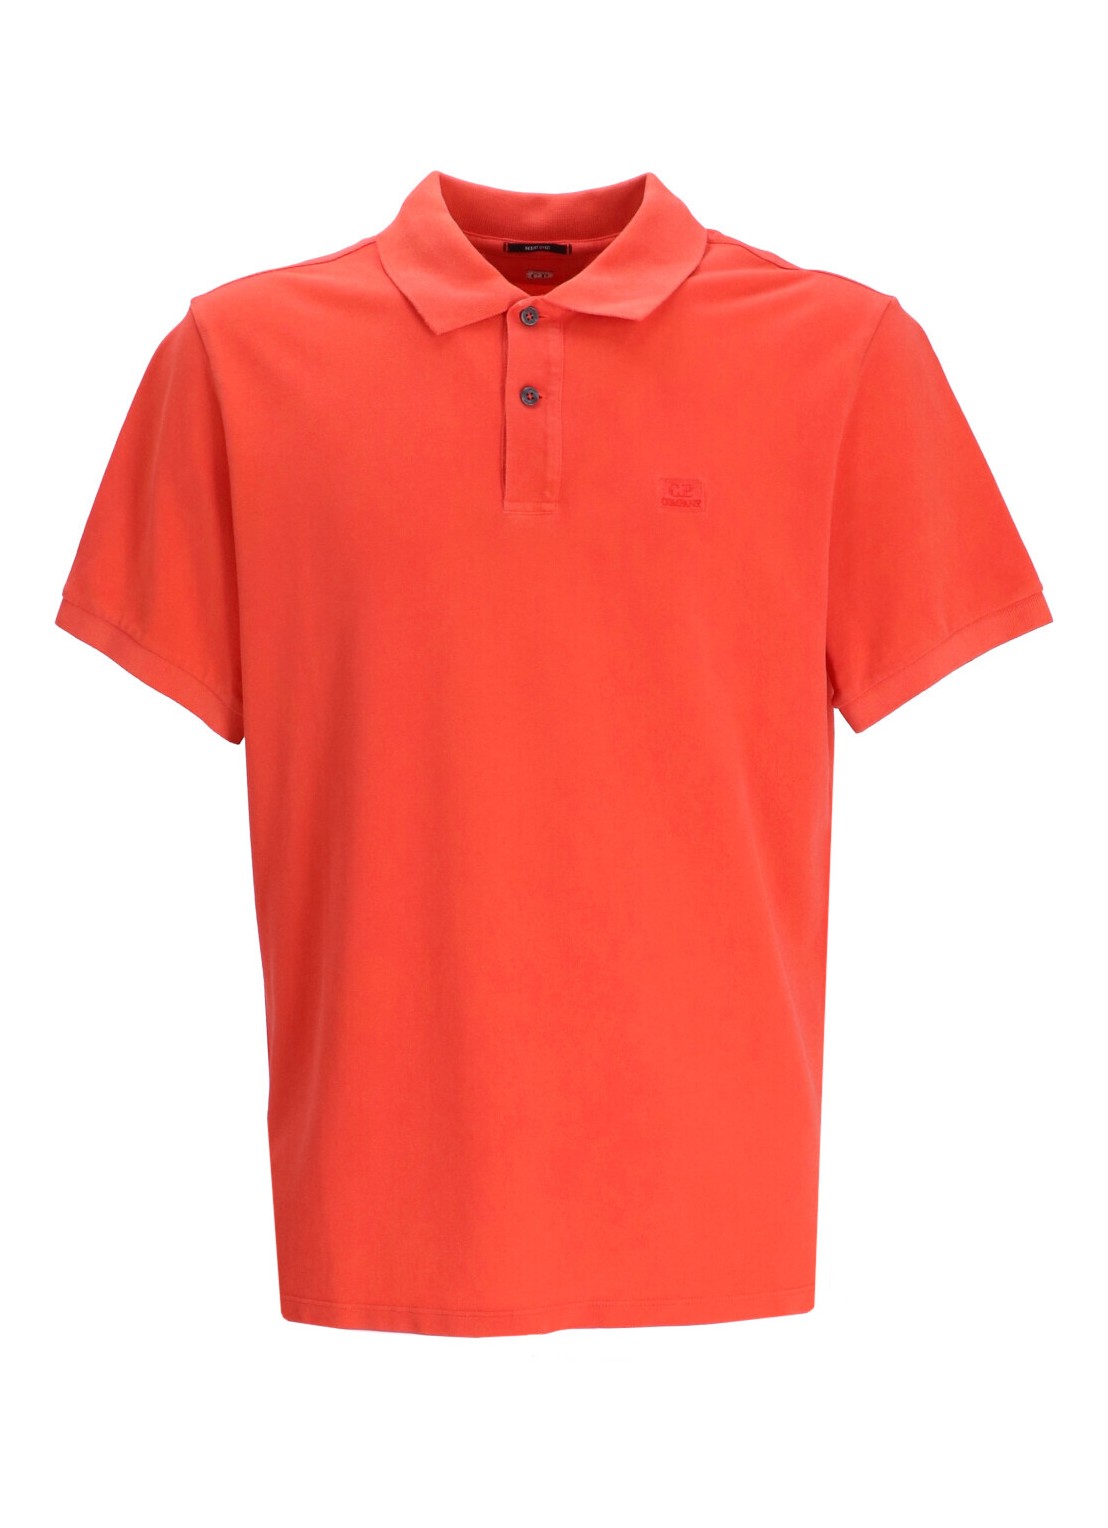 Polo c.p.company polo man piquet regular resist dyed polo shirt 15cmpl108a005527r 547 talla rojo
 